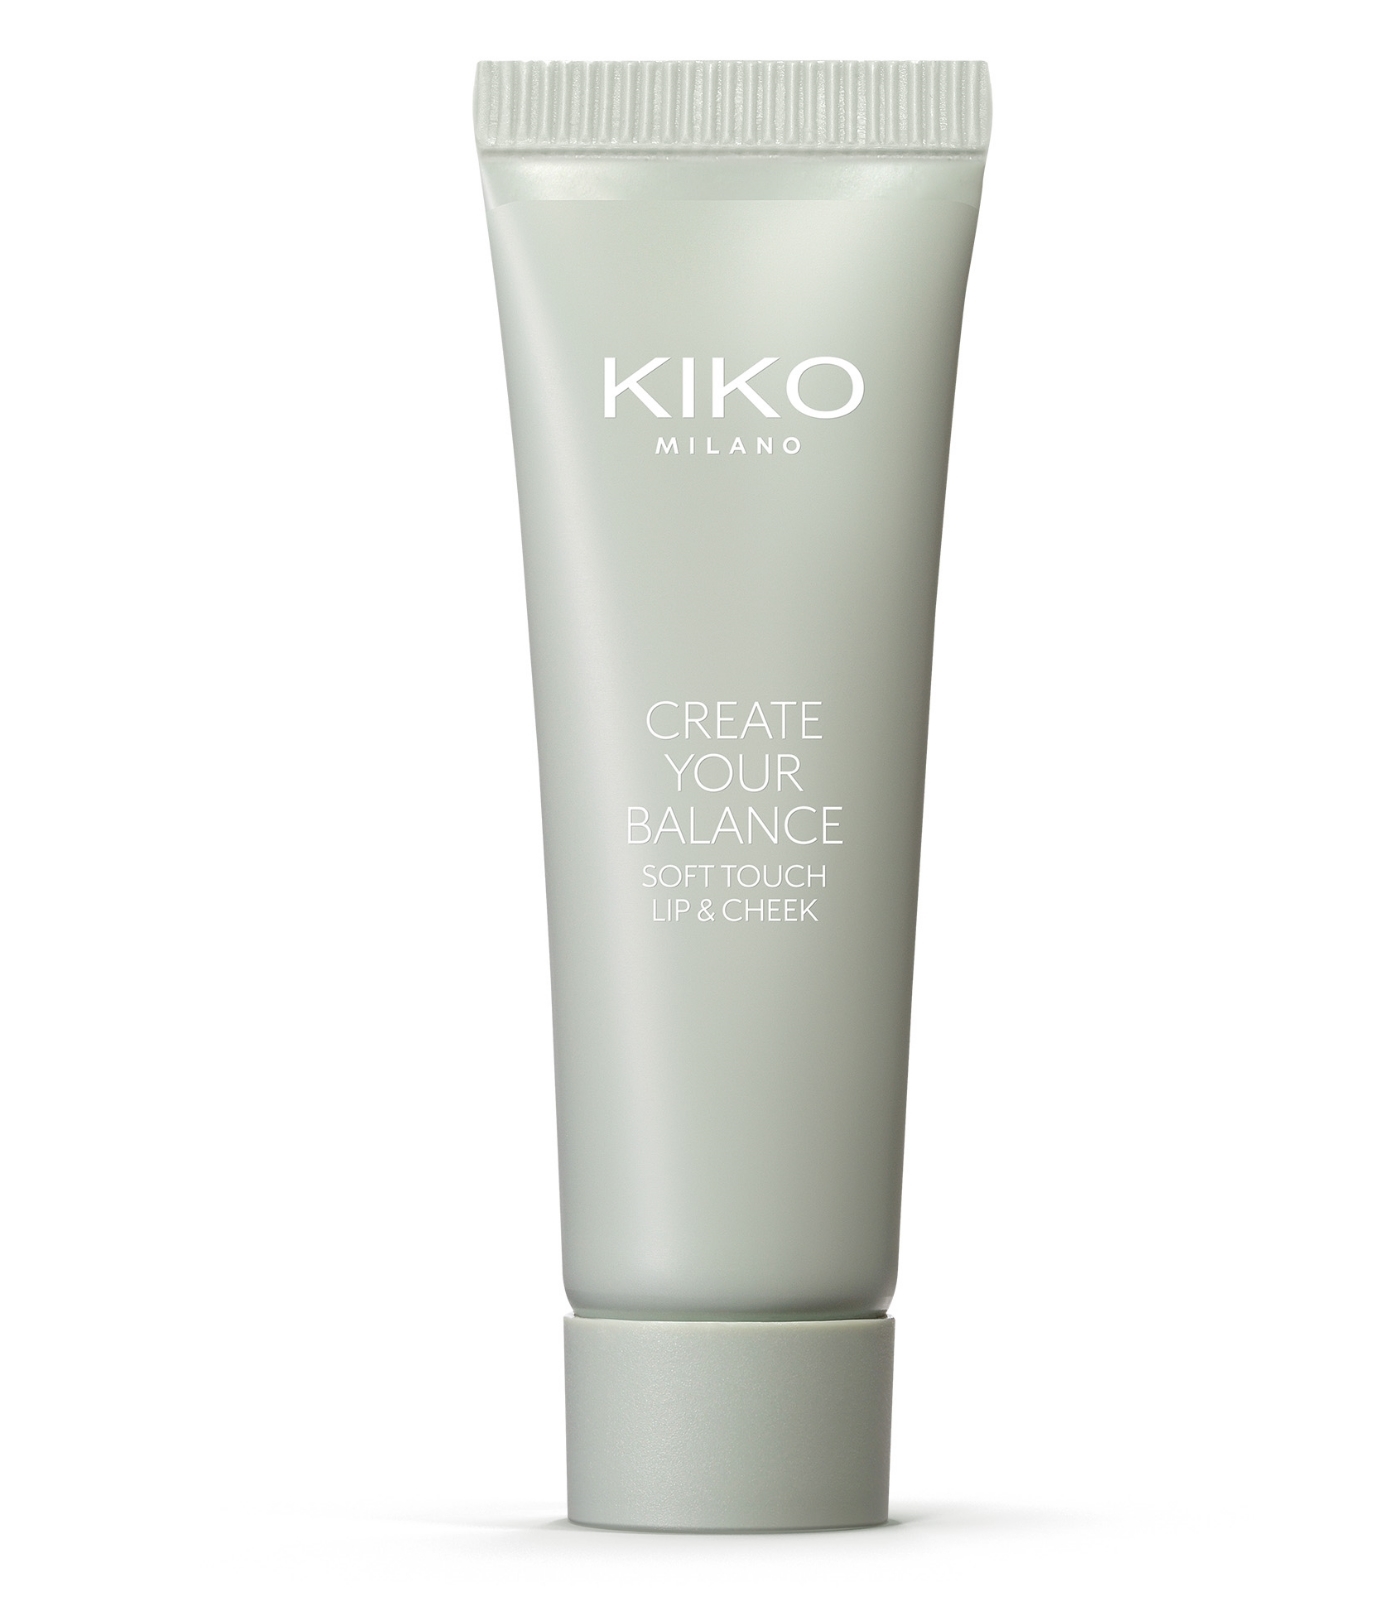 Tinte en crema para labios y mejillas Soft Touch Lip & Cheek de Kiko Milano, con una fórmula con extracto de camomila, aceite de ricino y ácido hialurónico (9,09 euros).